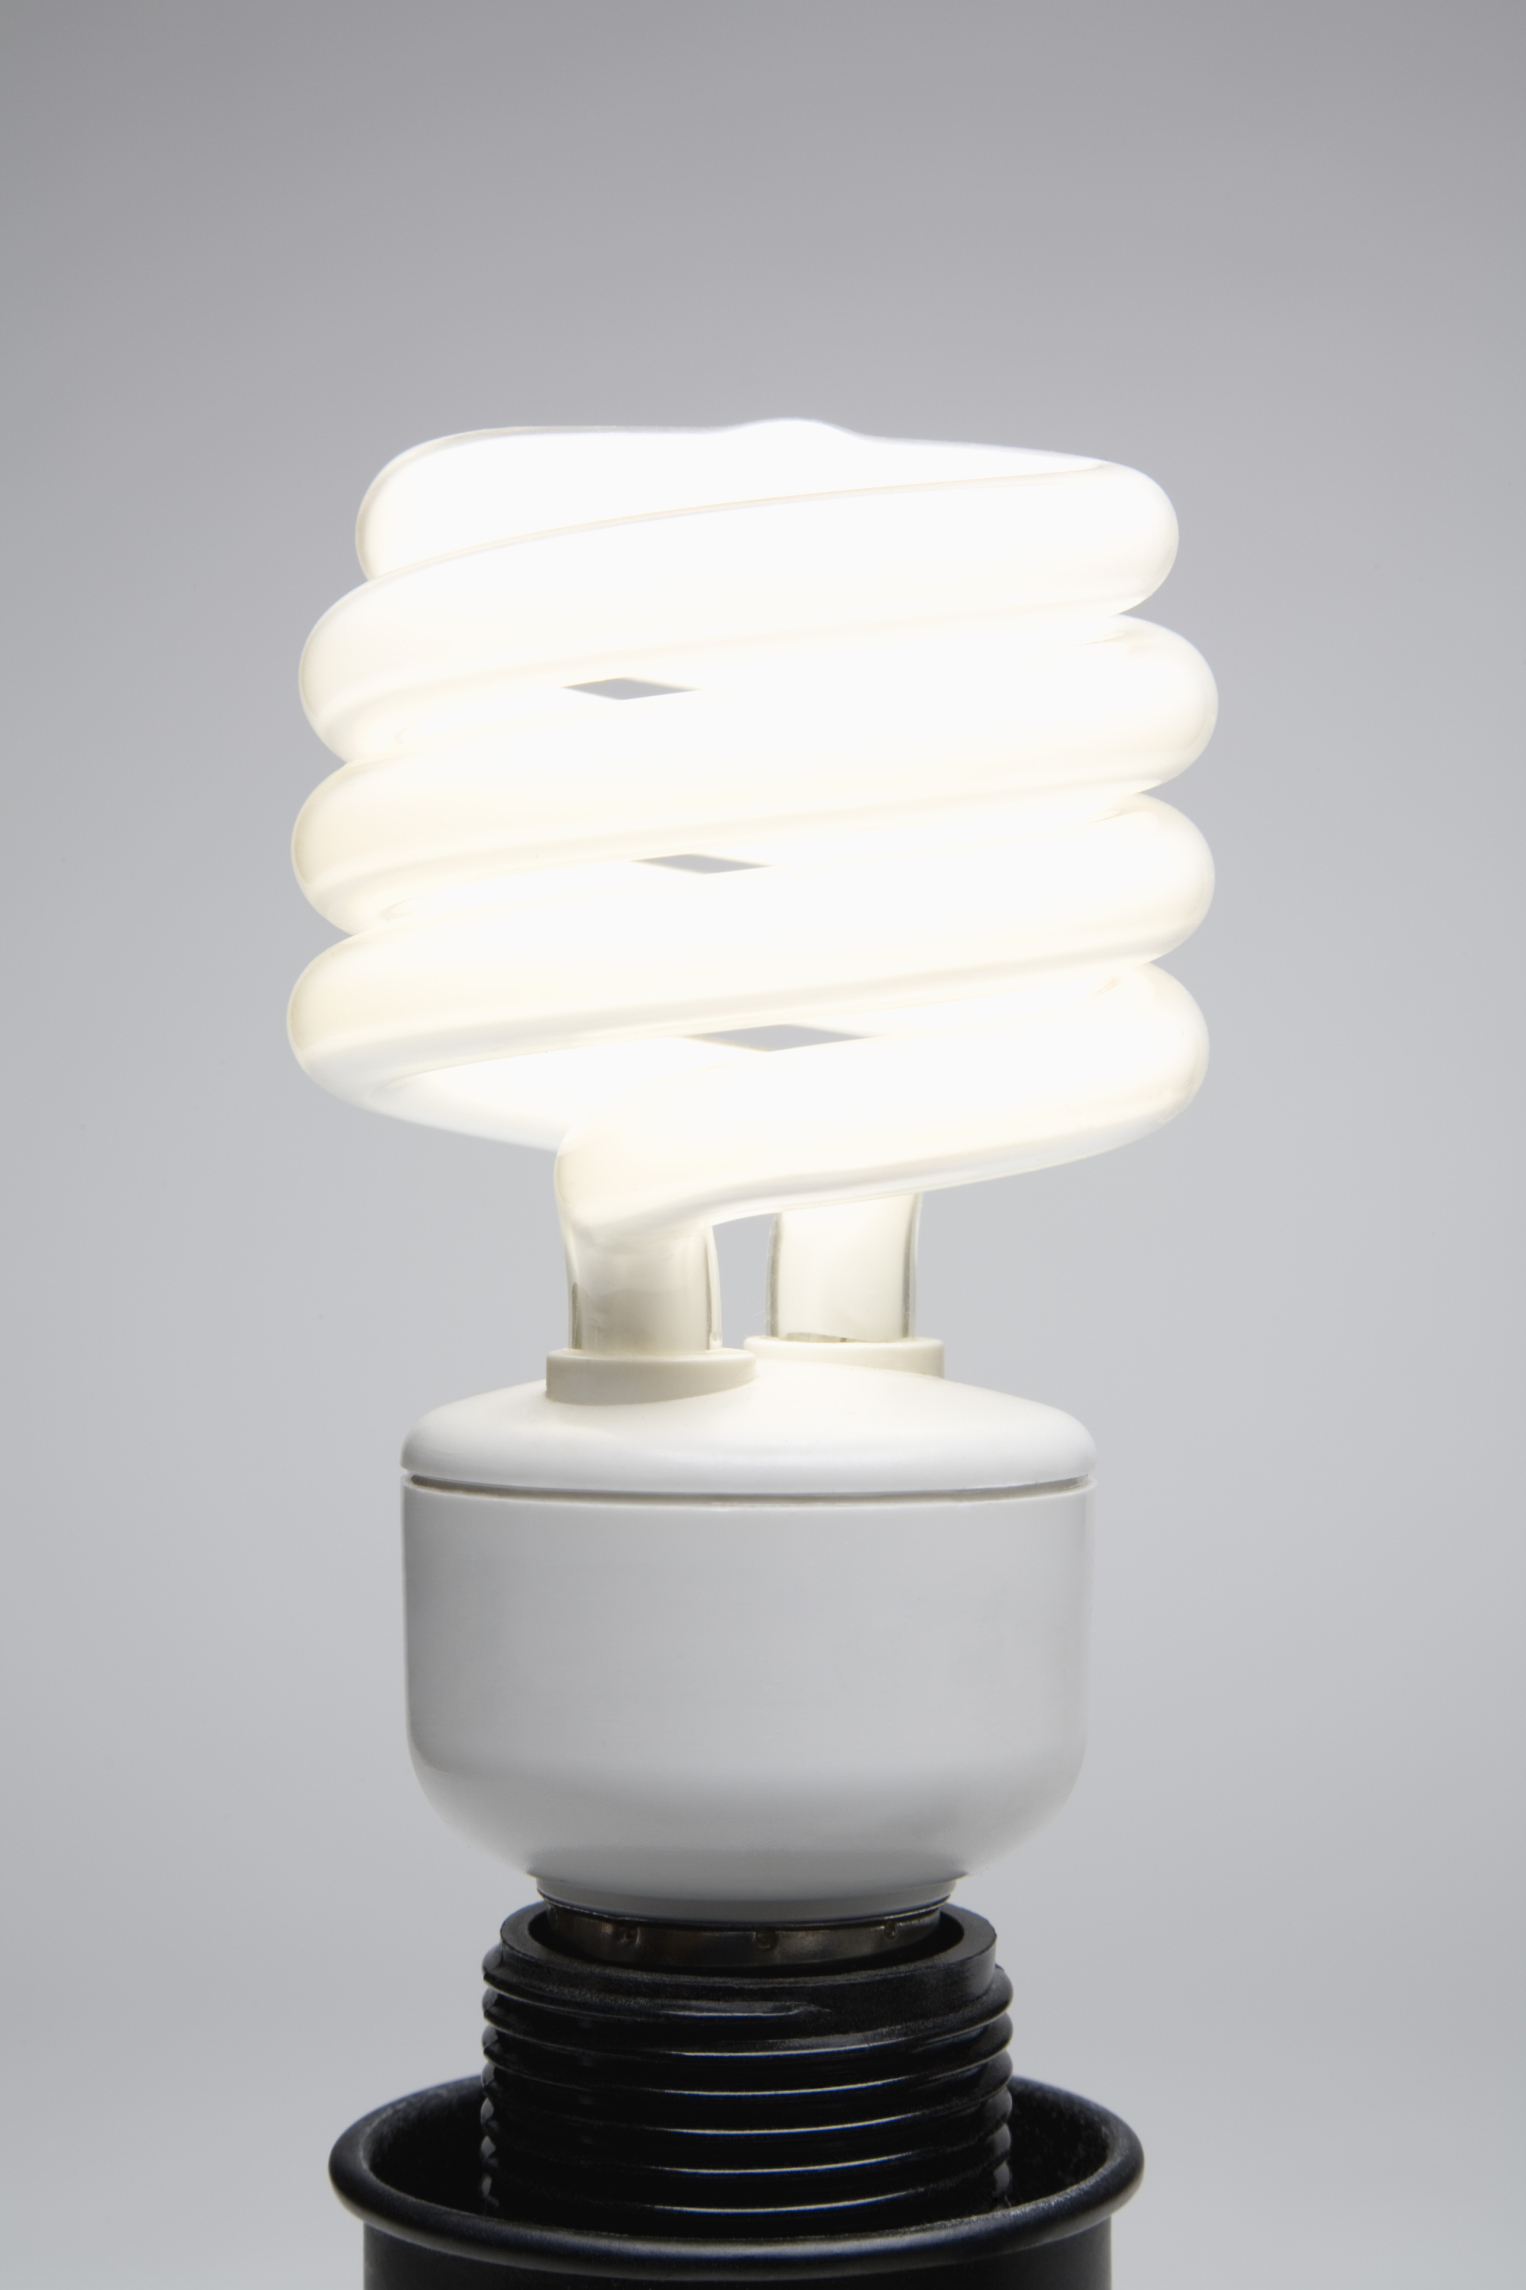 آیا انواع لامپ LED اشعه ماوراء بنفش ساطع می کنند؟